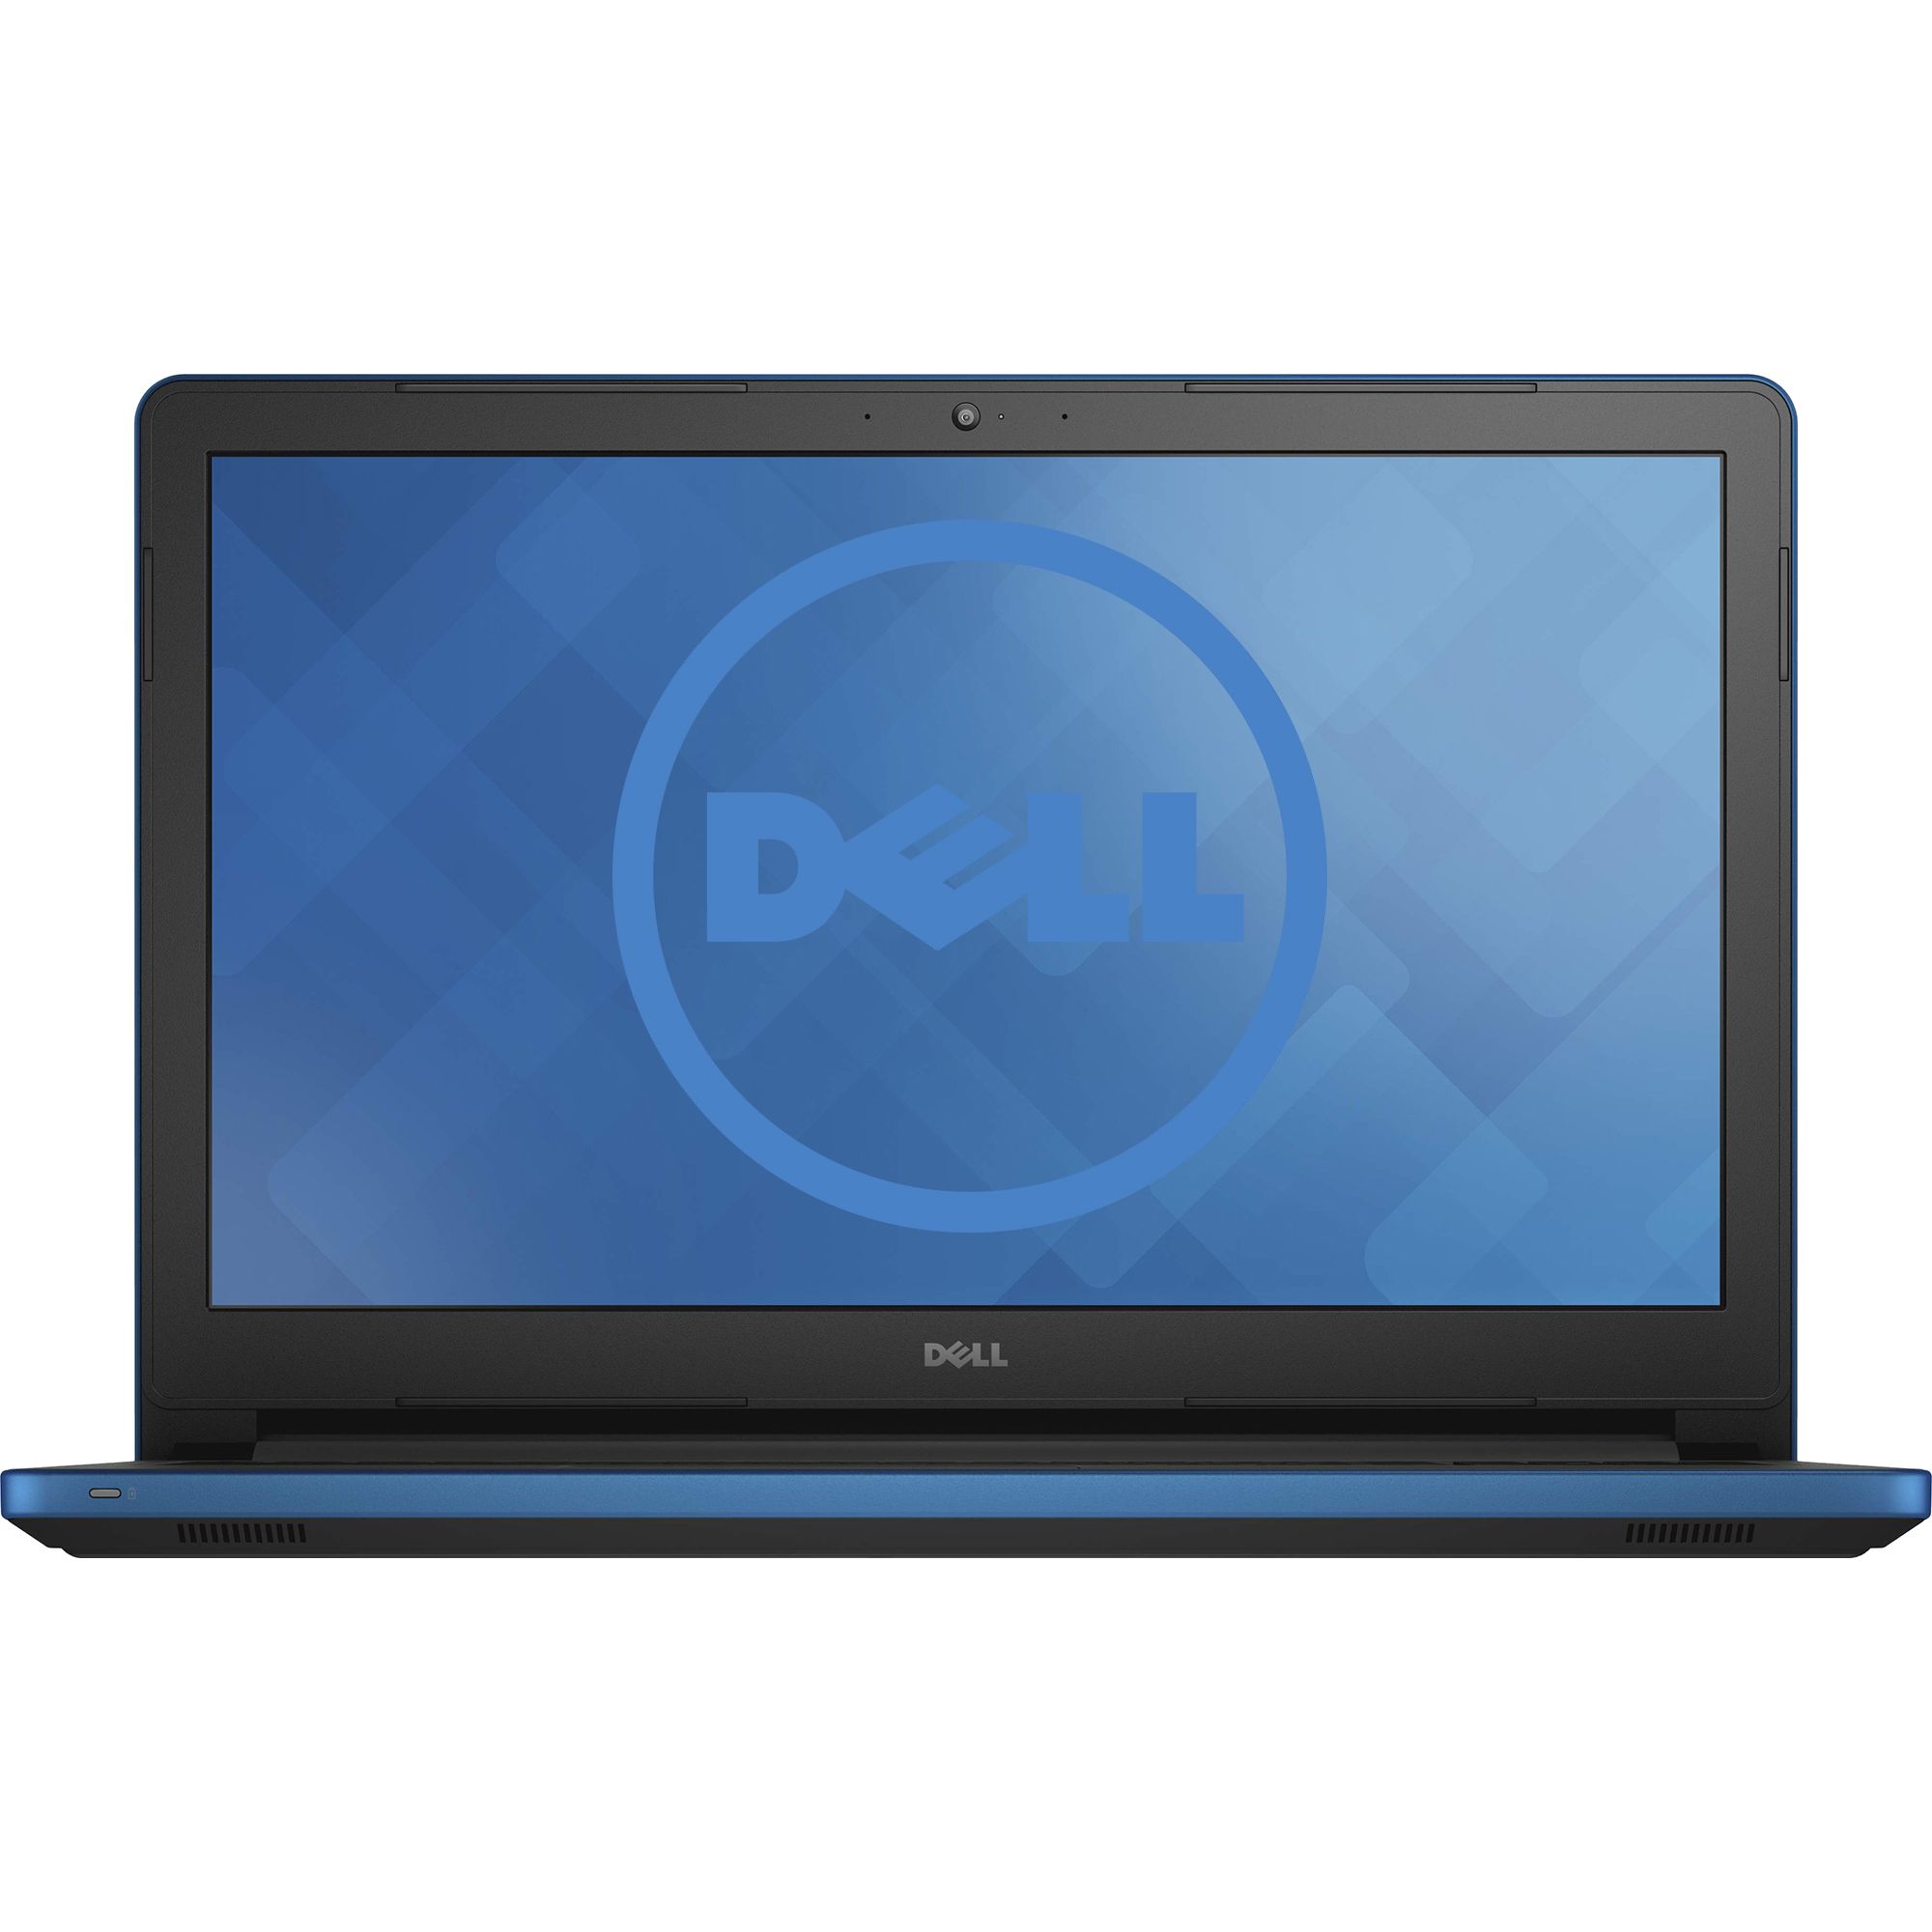 Laptop Dell Inspiron 5559, Intel Core i7-6500U, 8GB DDR4, HDD 1TB, AMD Radeon R5 M335 2GB, Free DOS